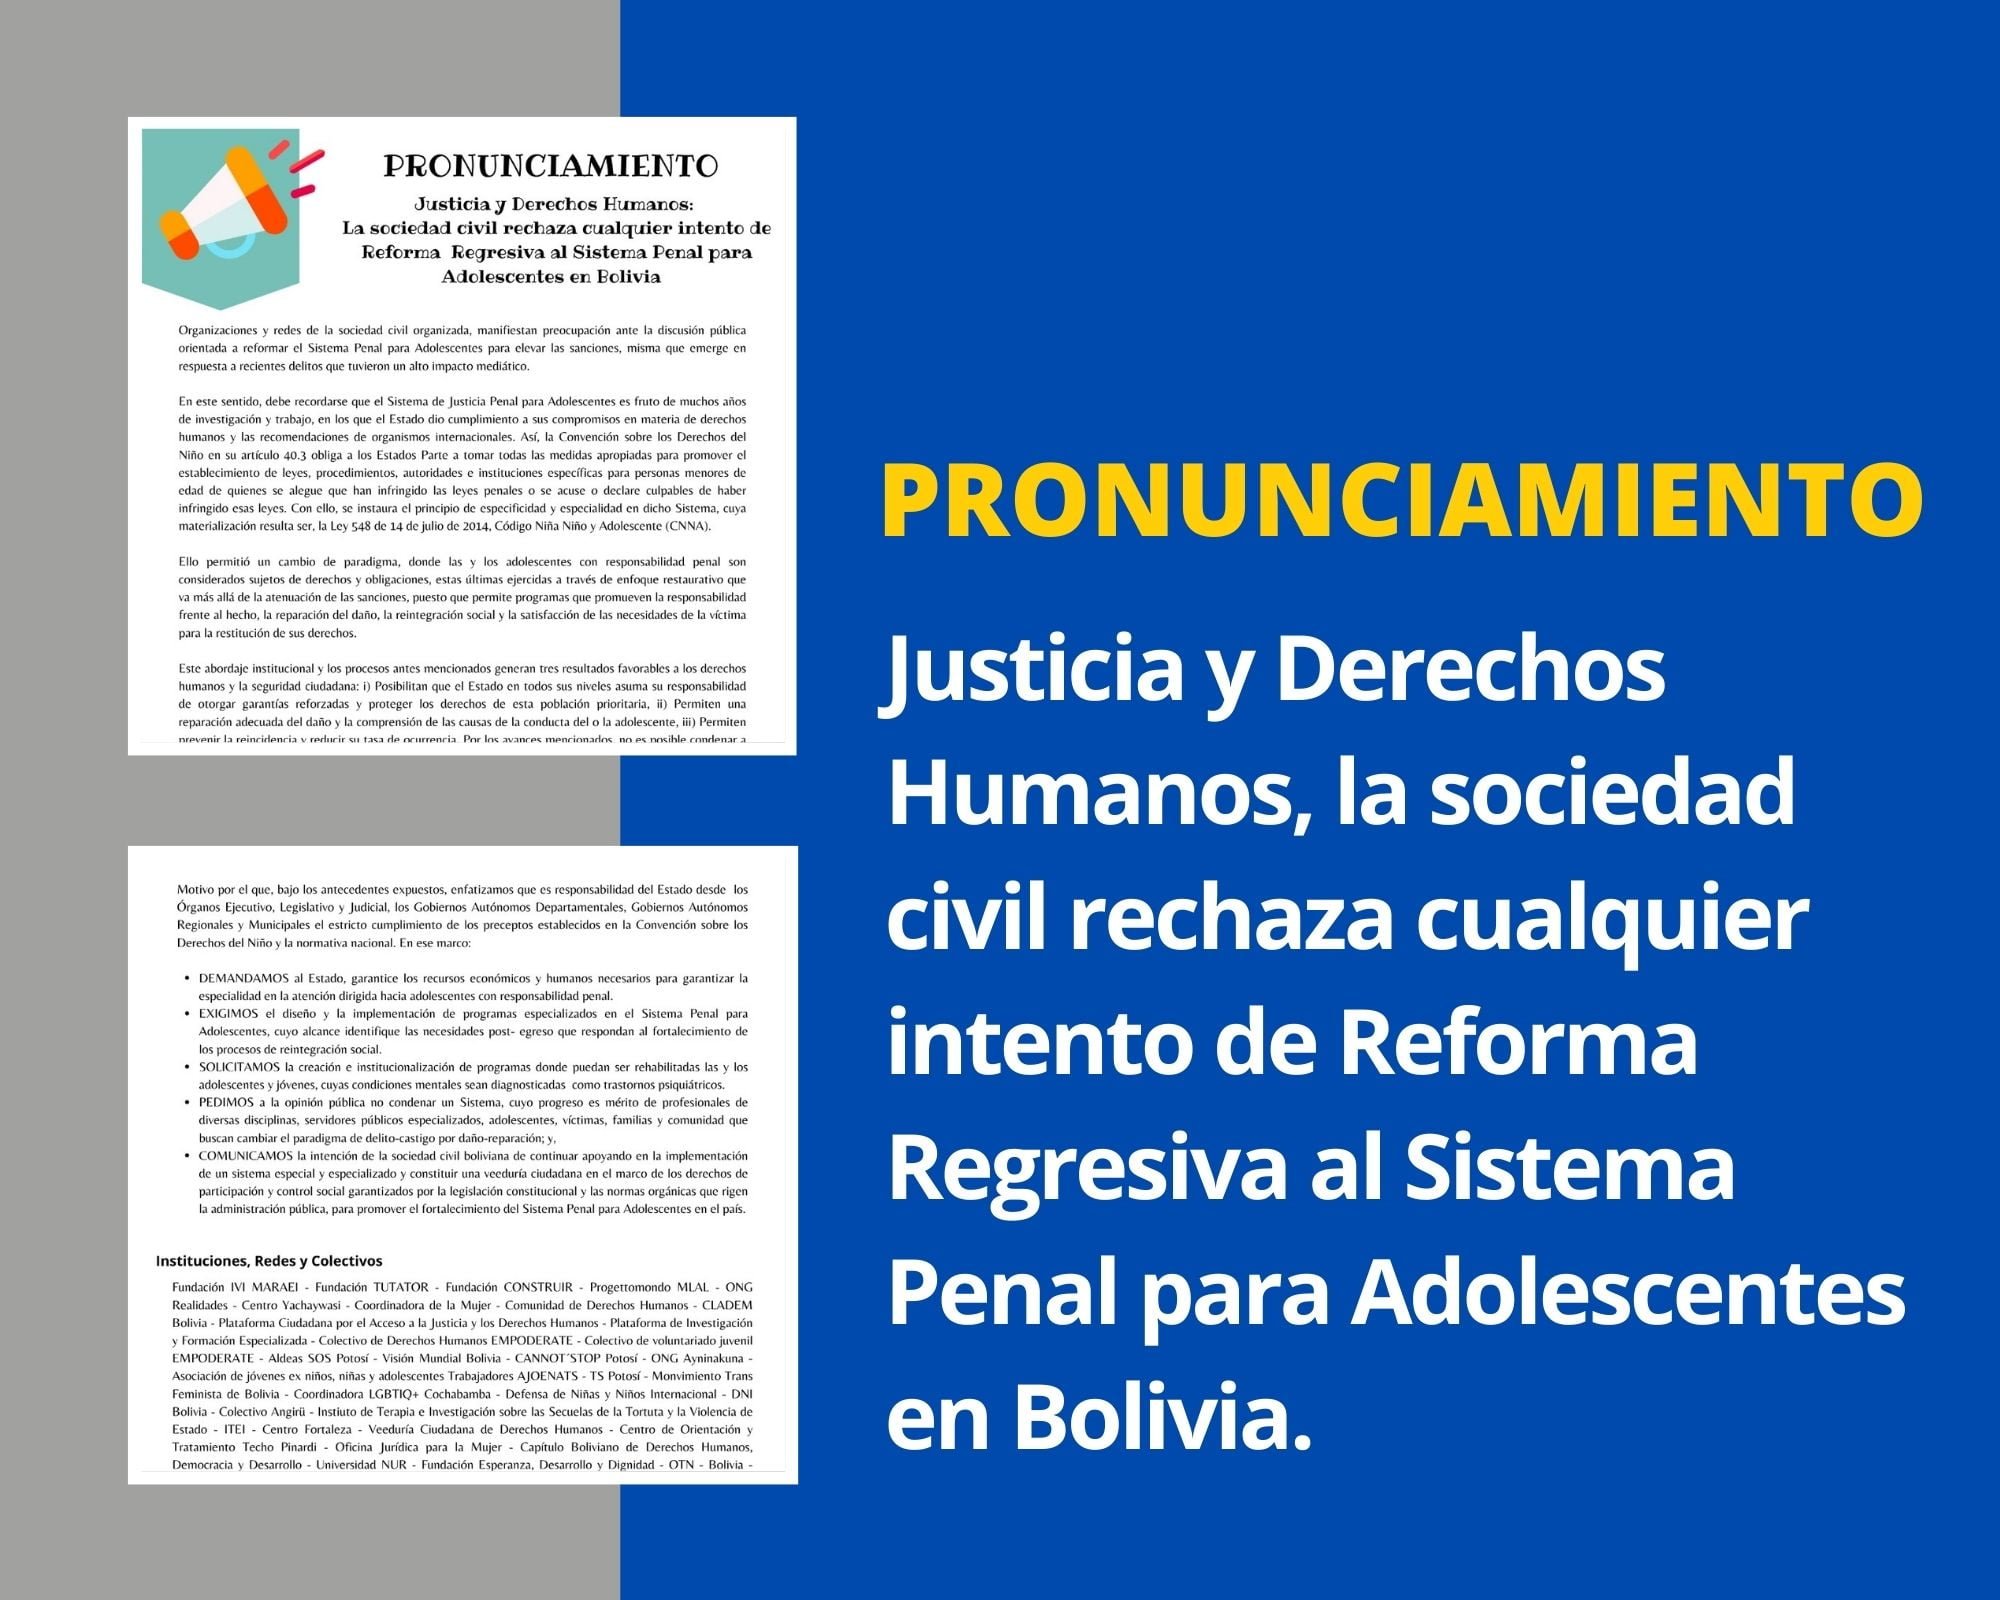 PRONUNCIAMIENTO: Justicia y Derechos Humanos, la sociedad civil rechaza cualquier intento de Reforma Regresiva al Sistema Penal para Adolescentes en Bolivia